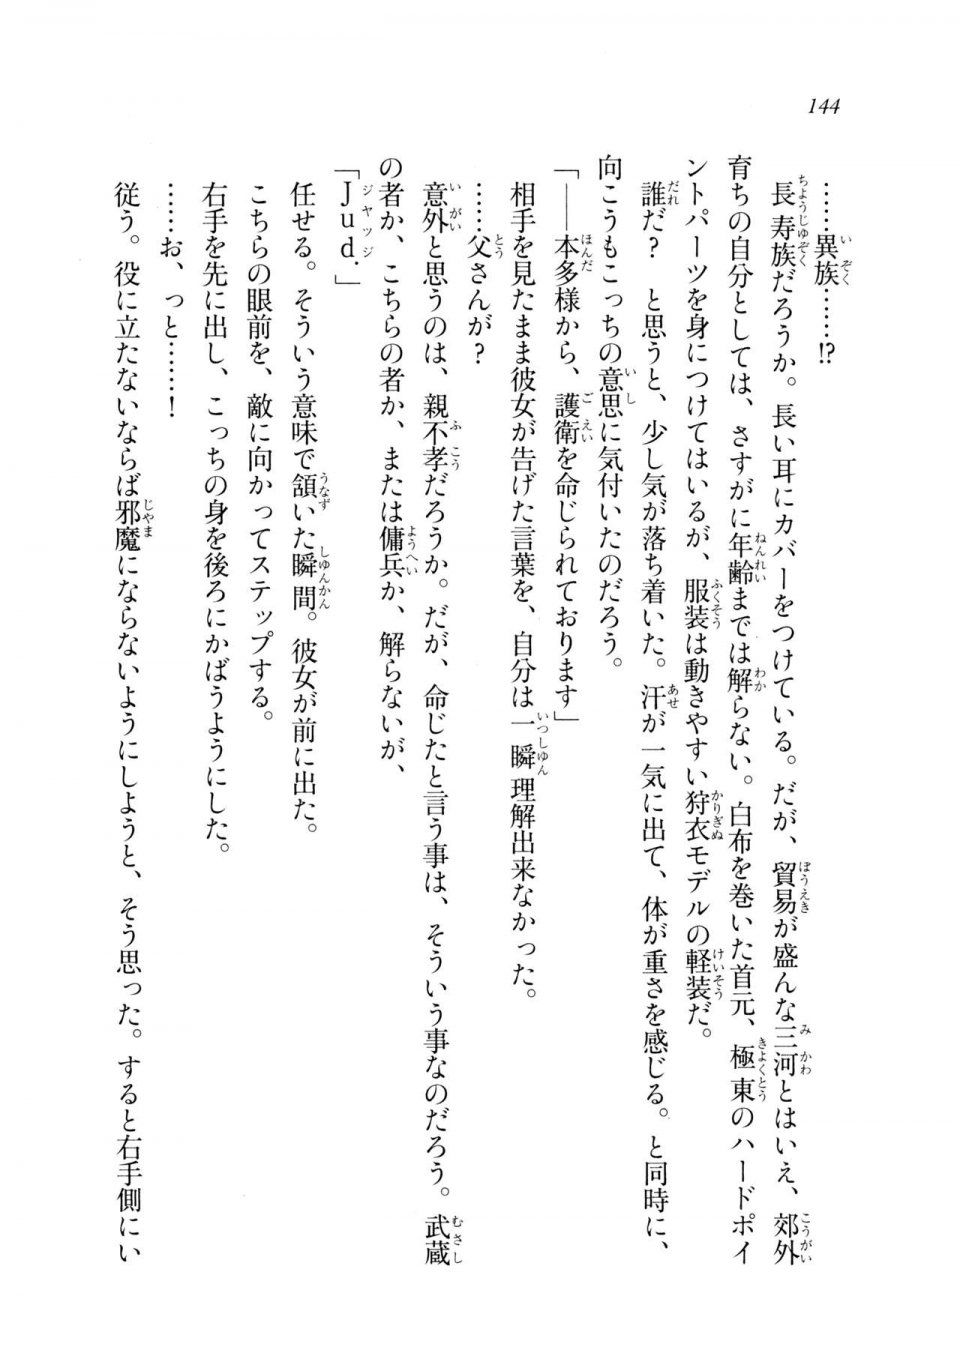 Kyoukai Senjou no Horizon LN Sidestory Vol 2 - Photo #142